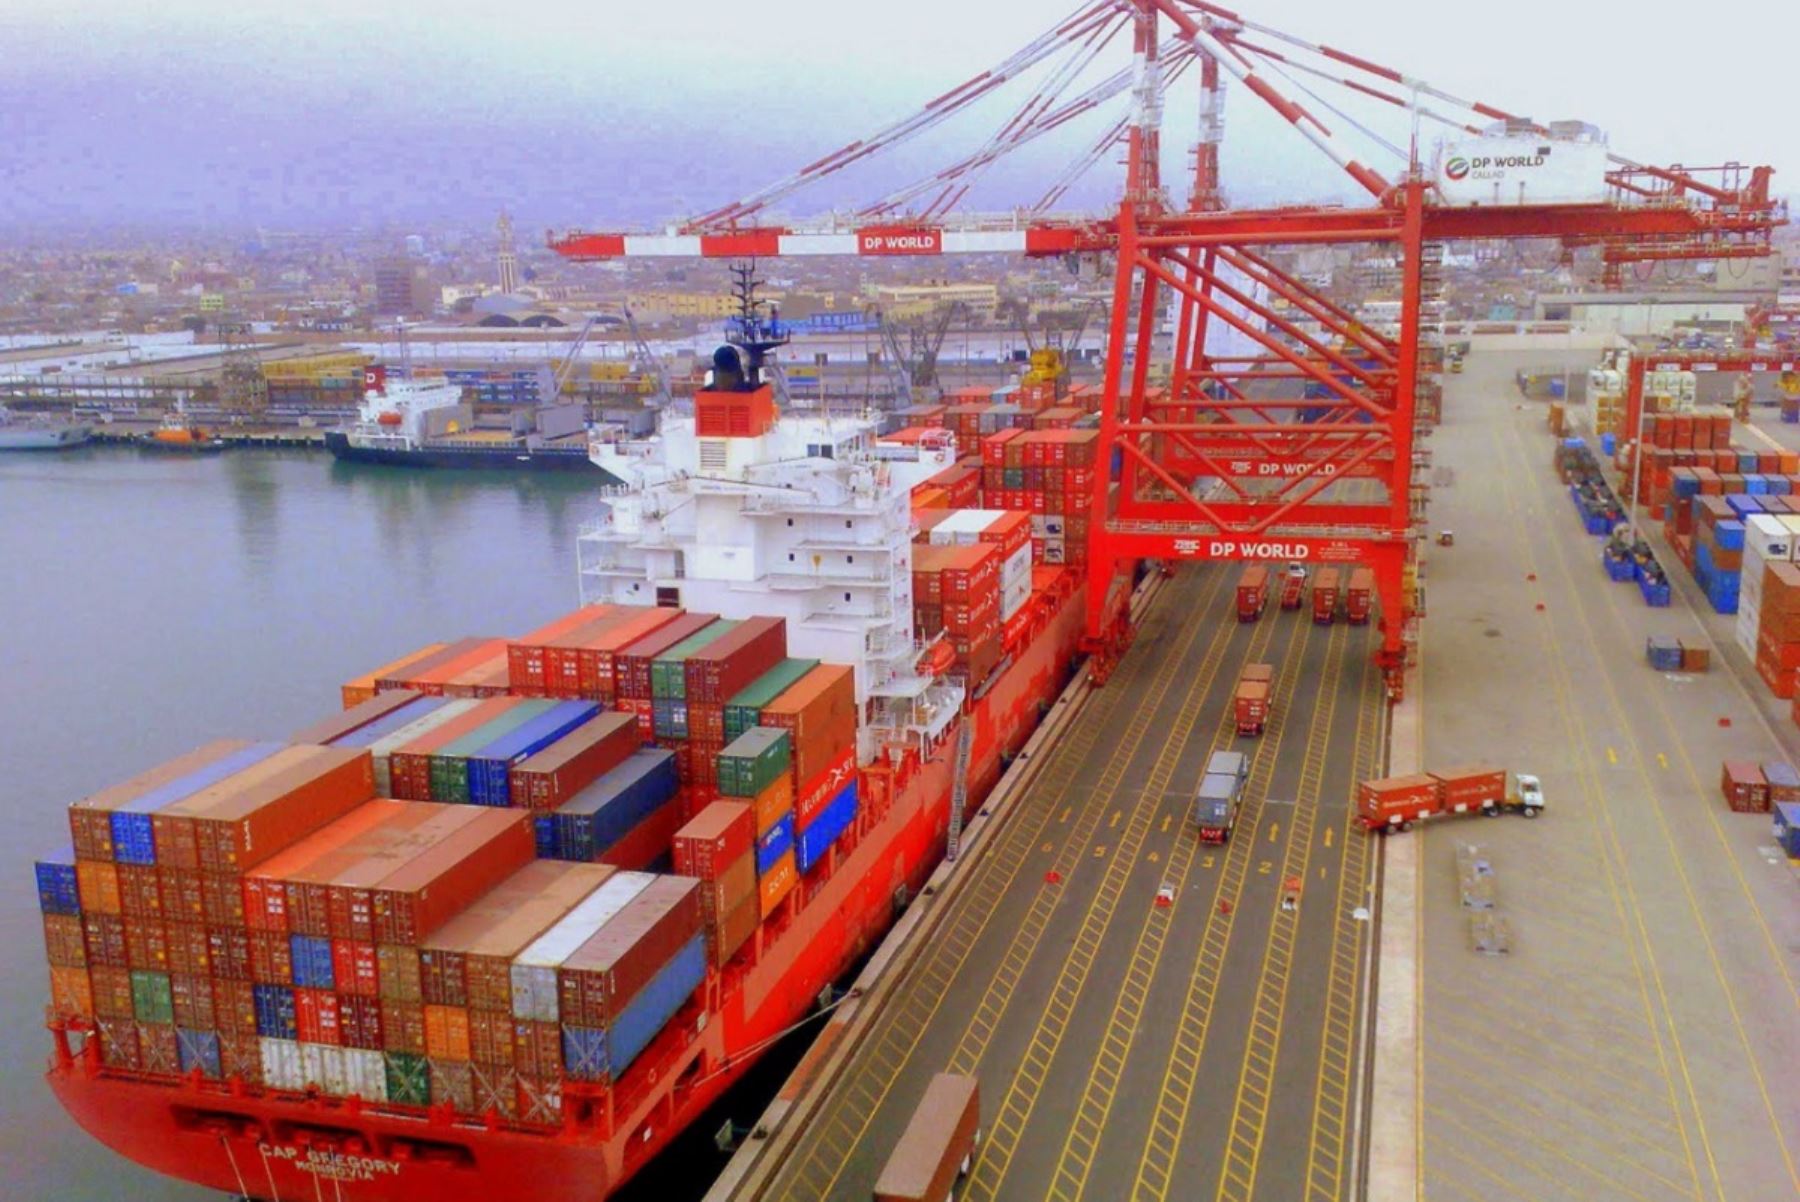 El transporte marítimo es una buena alternativa ante eventuales interrupciones del tráfico terrestre en la costa peruana. Foto: cortesía.